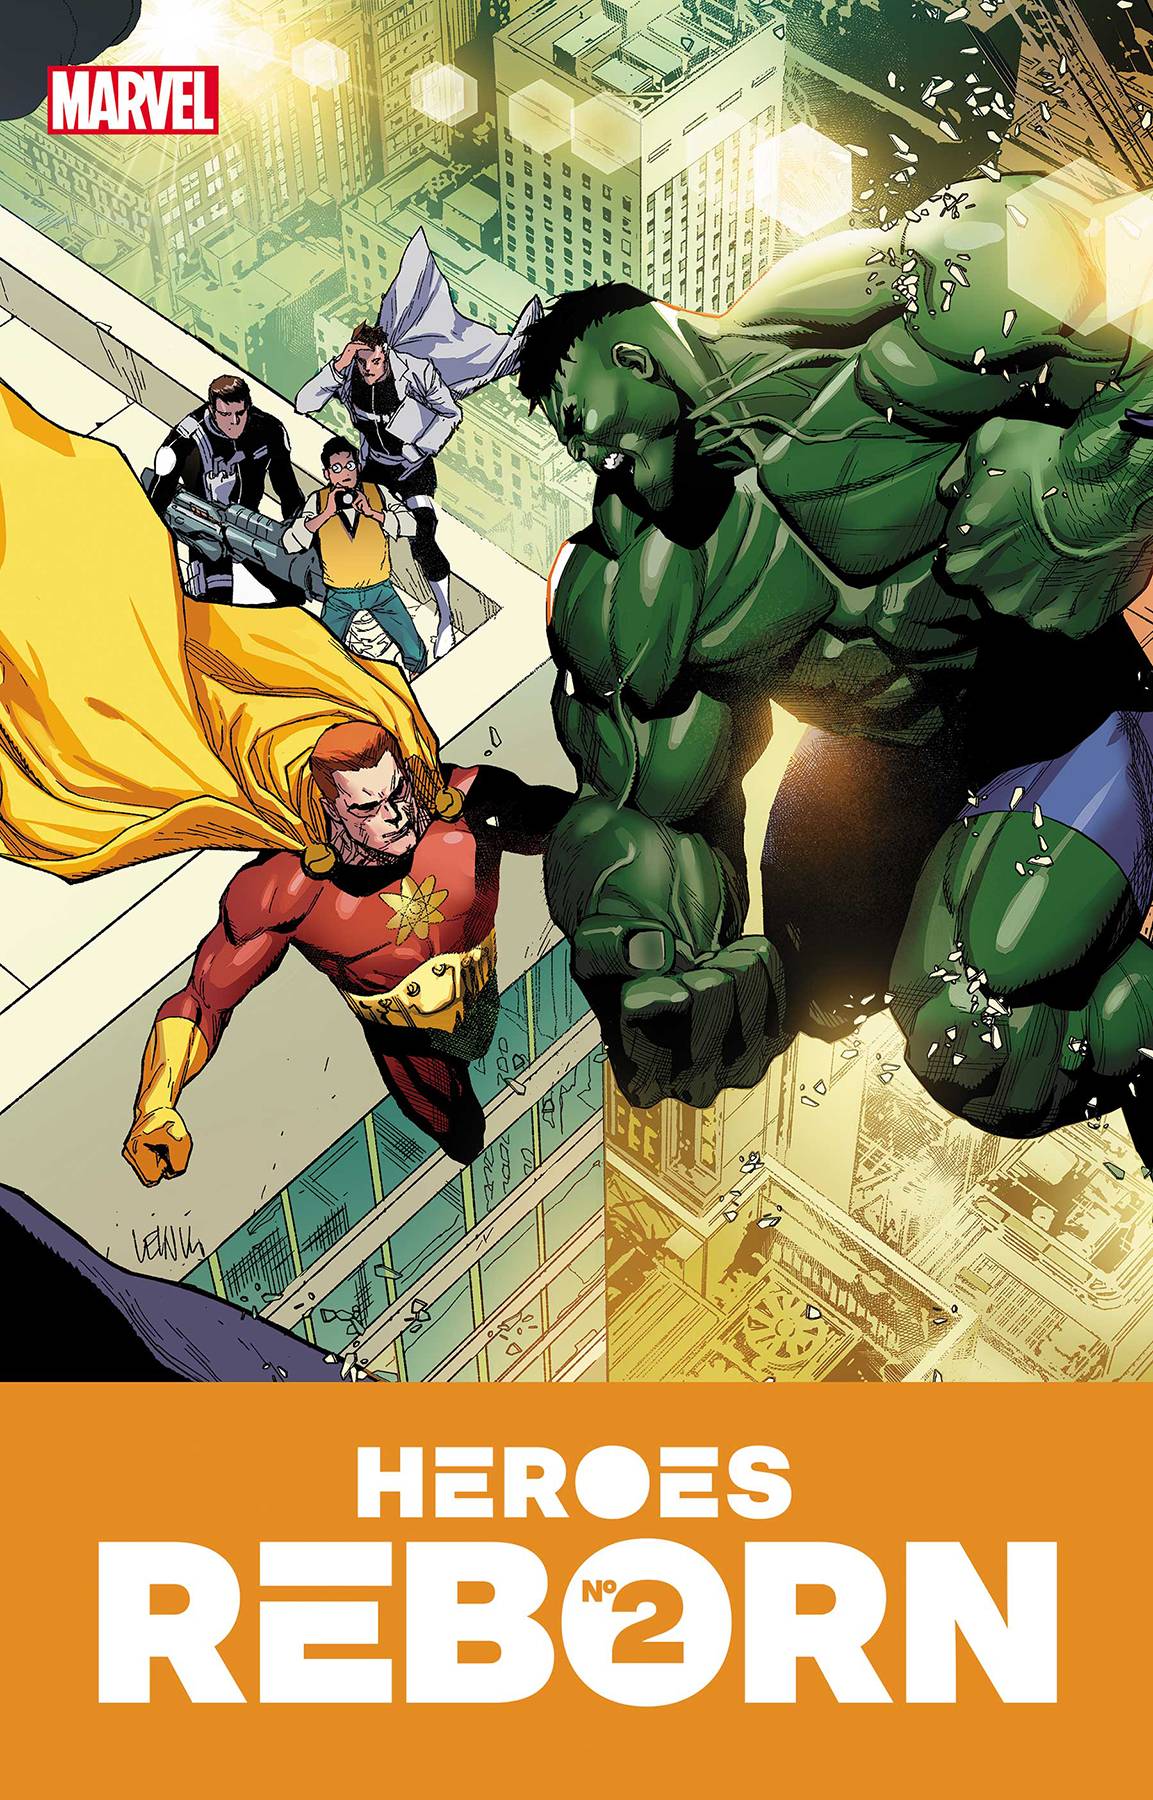 HEROES REBORN #2 (OF 7) 05/12/21